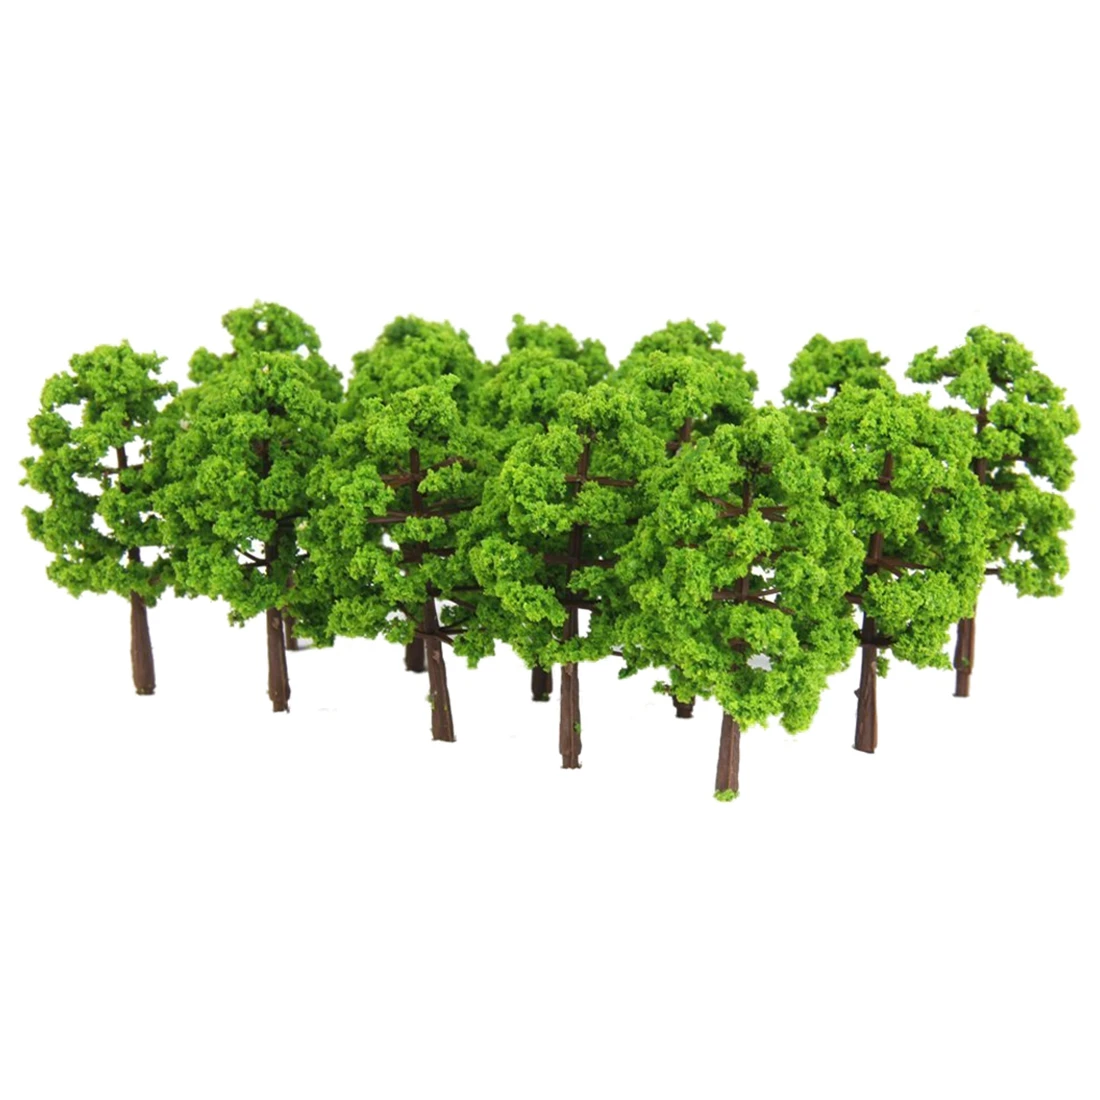 Maquette en plastique arbre Train chemin de fer paysage 1: 100 20 pièces. Vert foncé